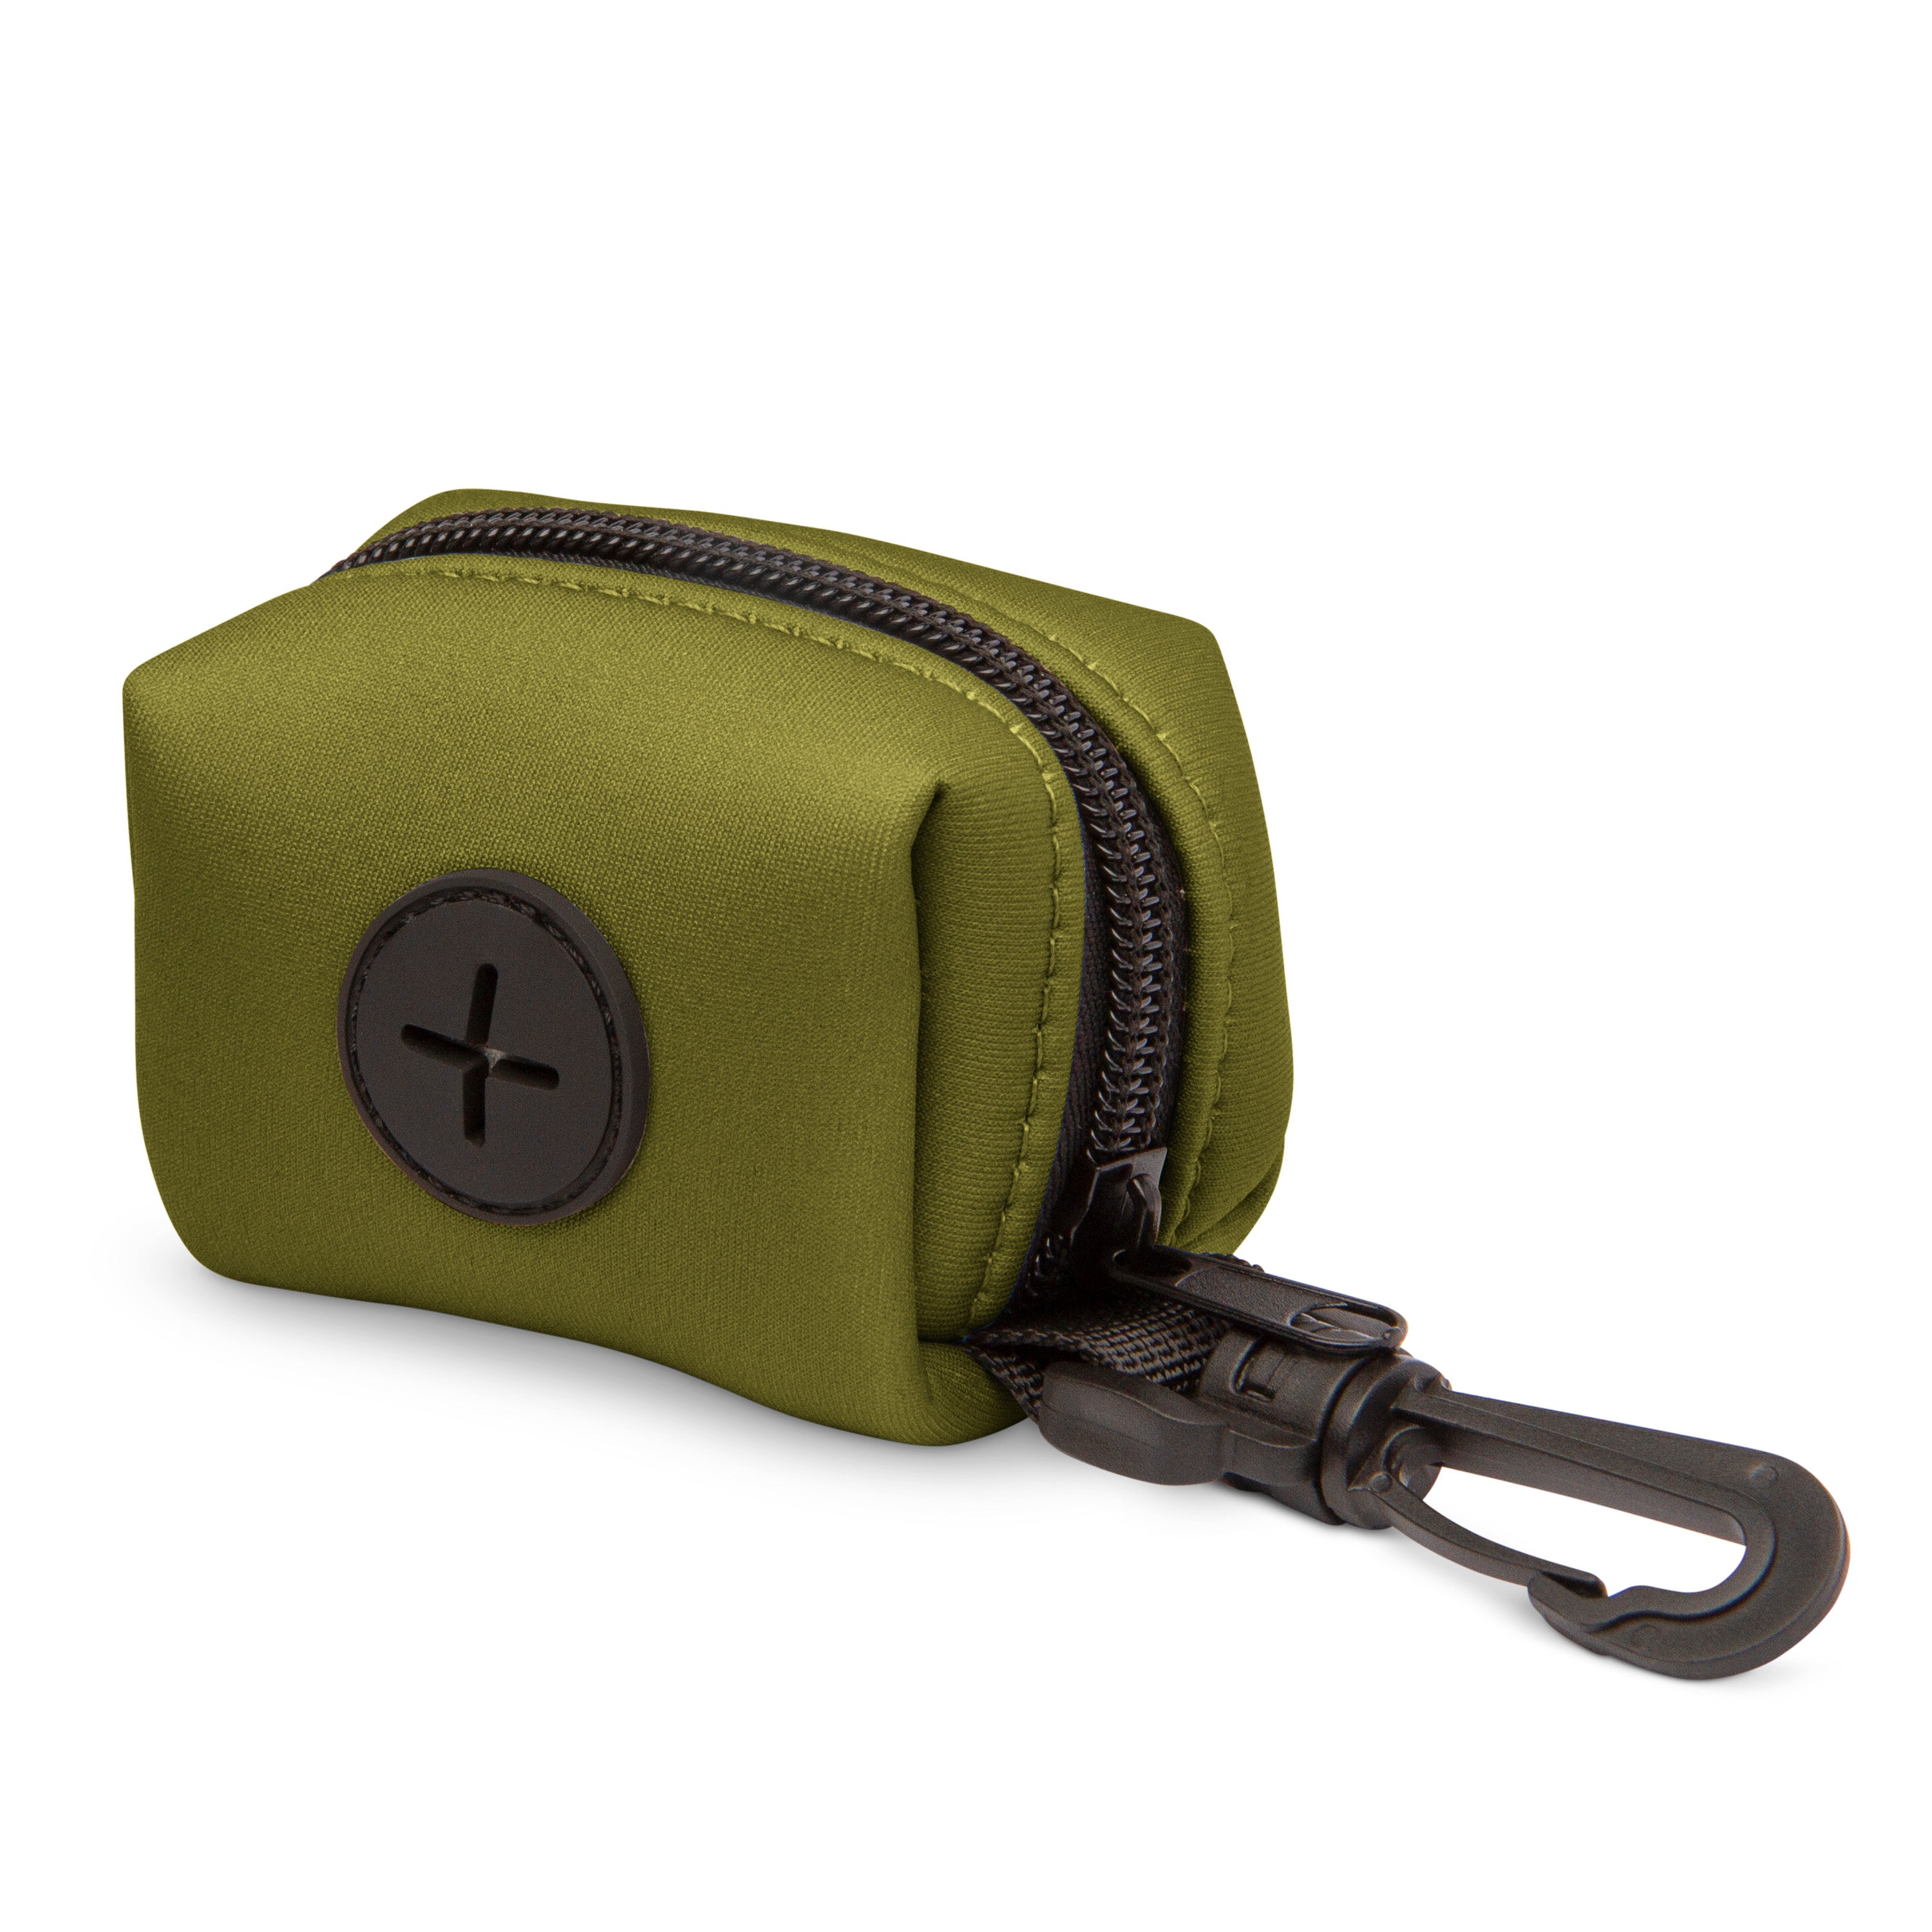 The Modern Dog Company - Olive Green Poop Bag Holder